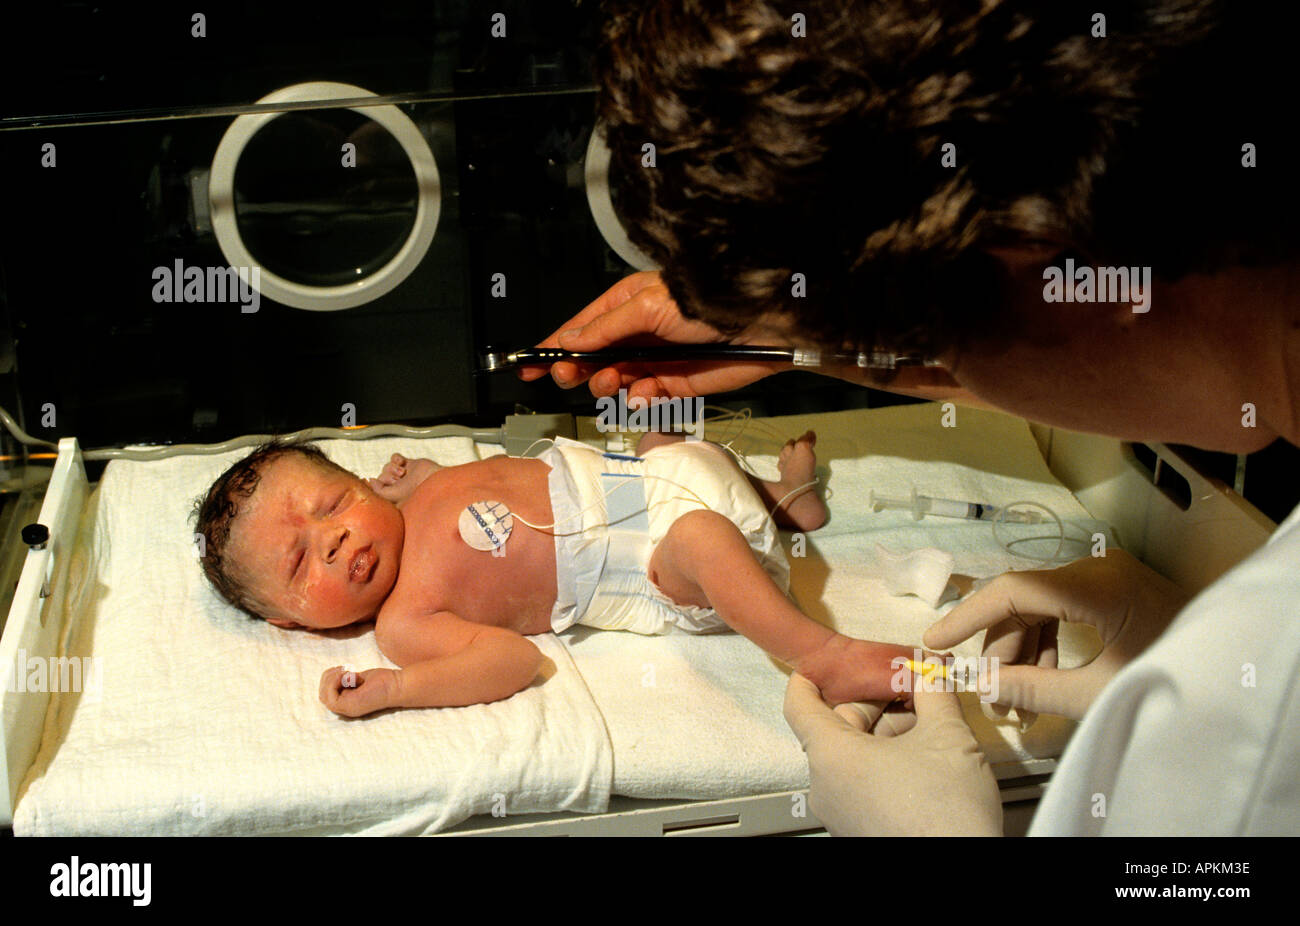 Bébé prématuré de l'incubateur de soins intensifs de l'hôpital Banque D'Images